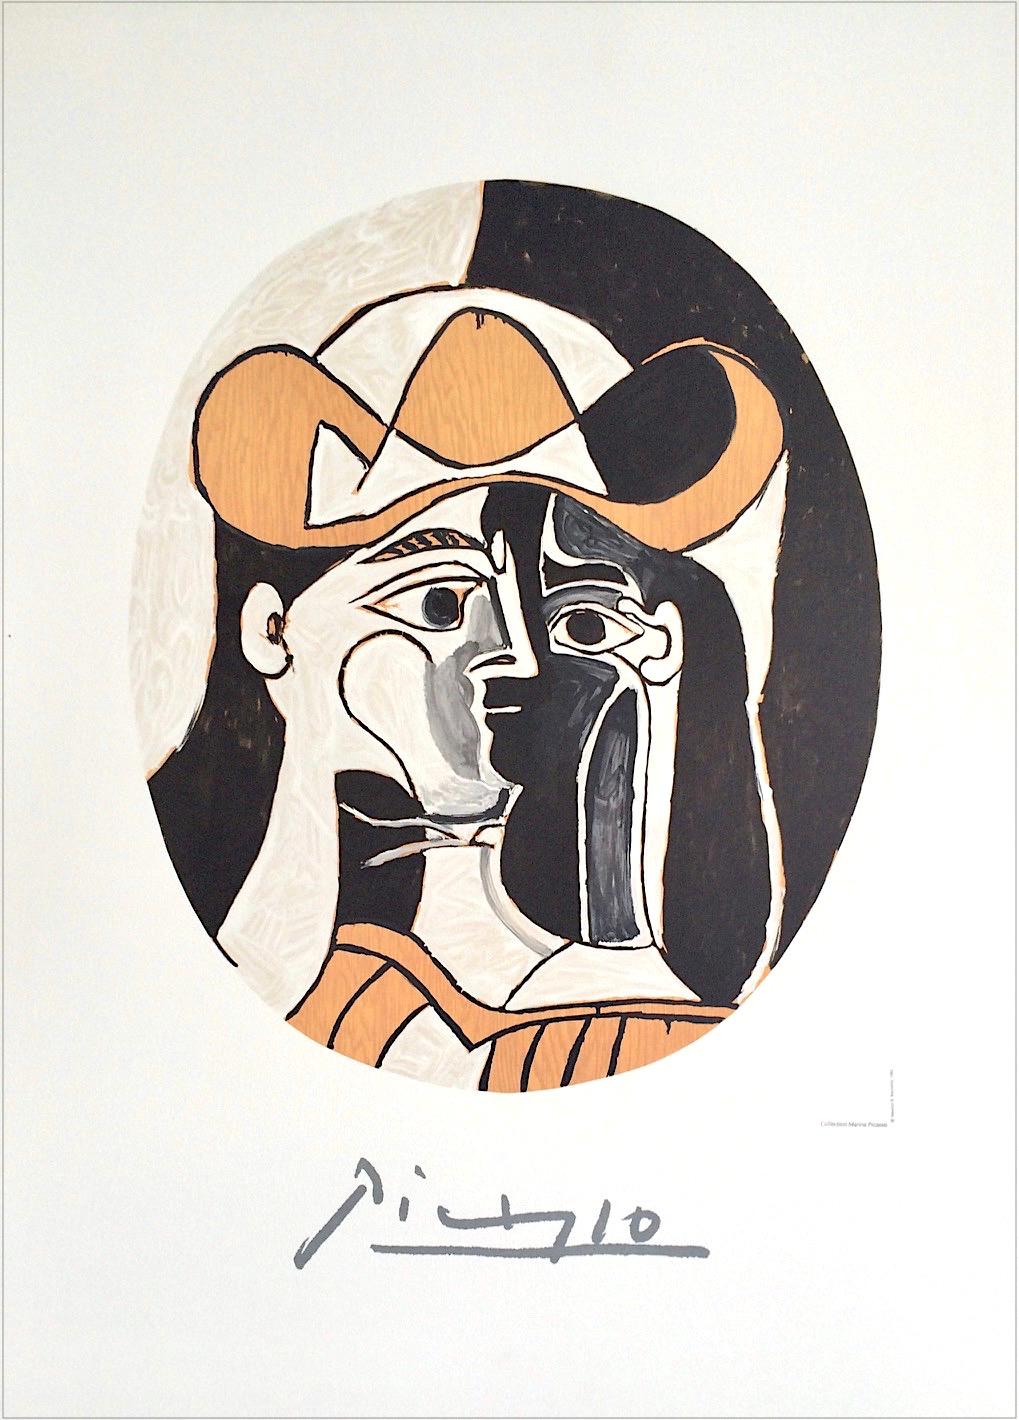 FEMME AU CHAPEAU Lithograph, Abstract Oval Portrait, Woman Cowboy Hat Black Eyes For Sale 1